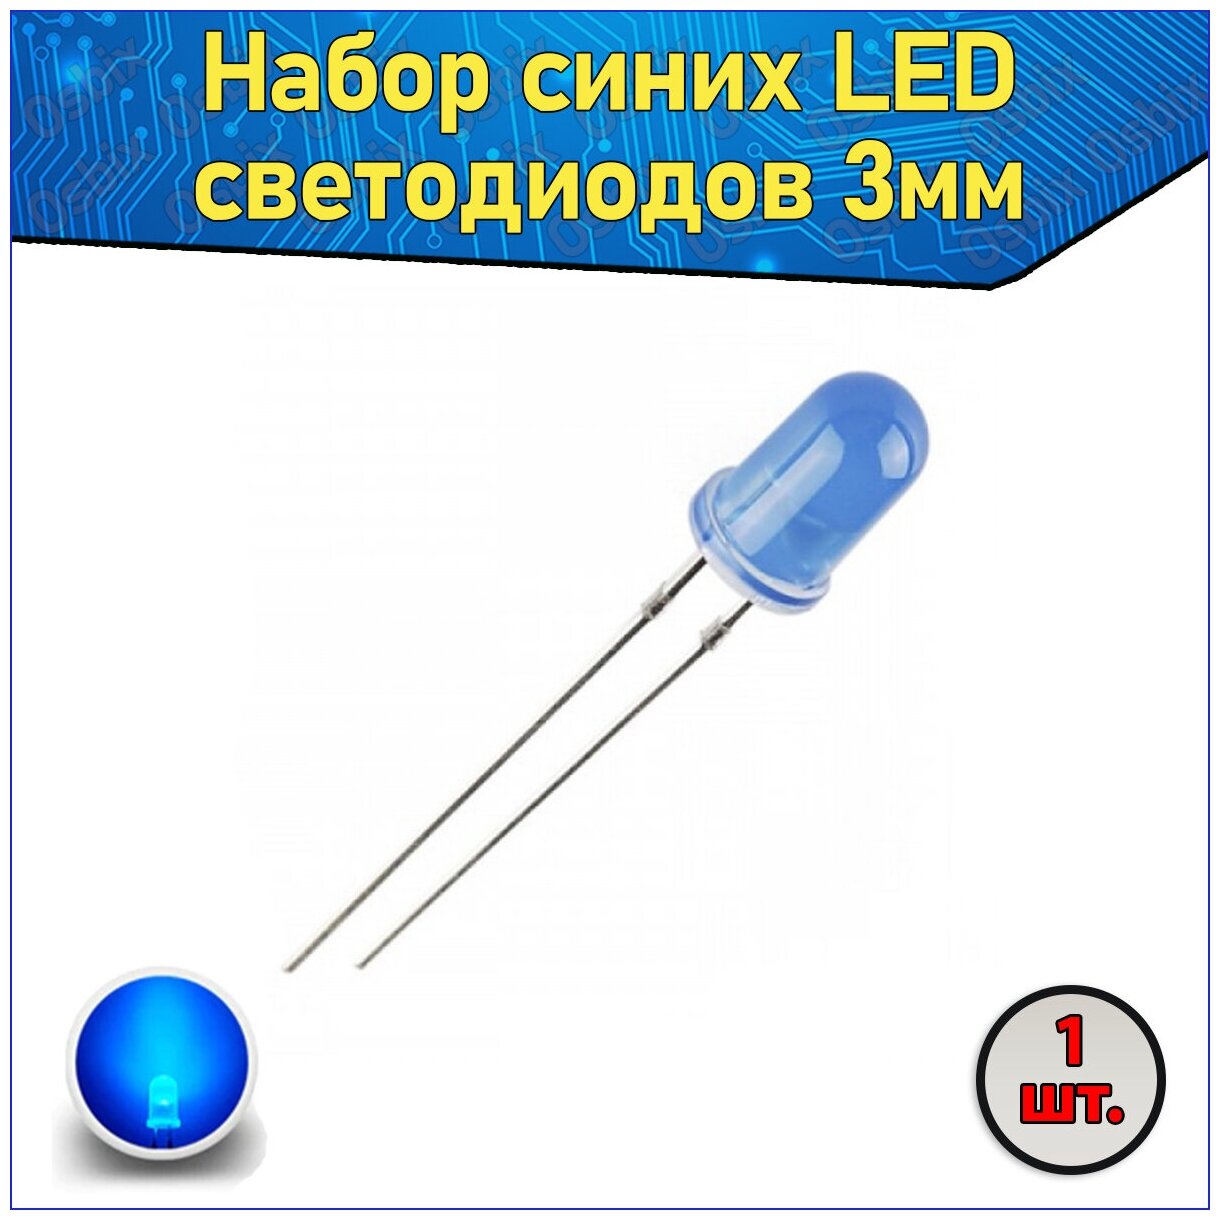 Набор синих LED светодиодов 3мм